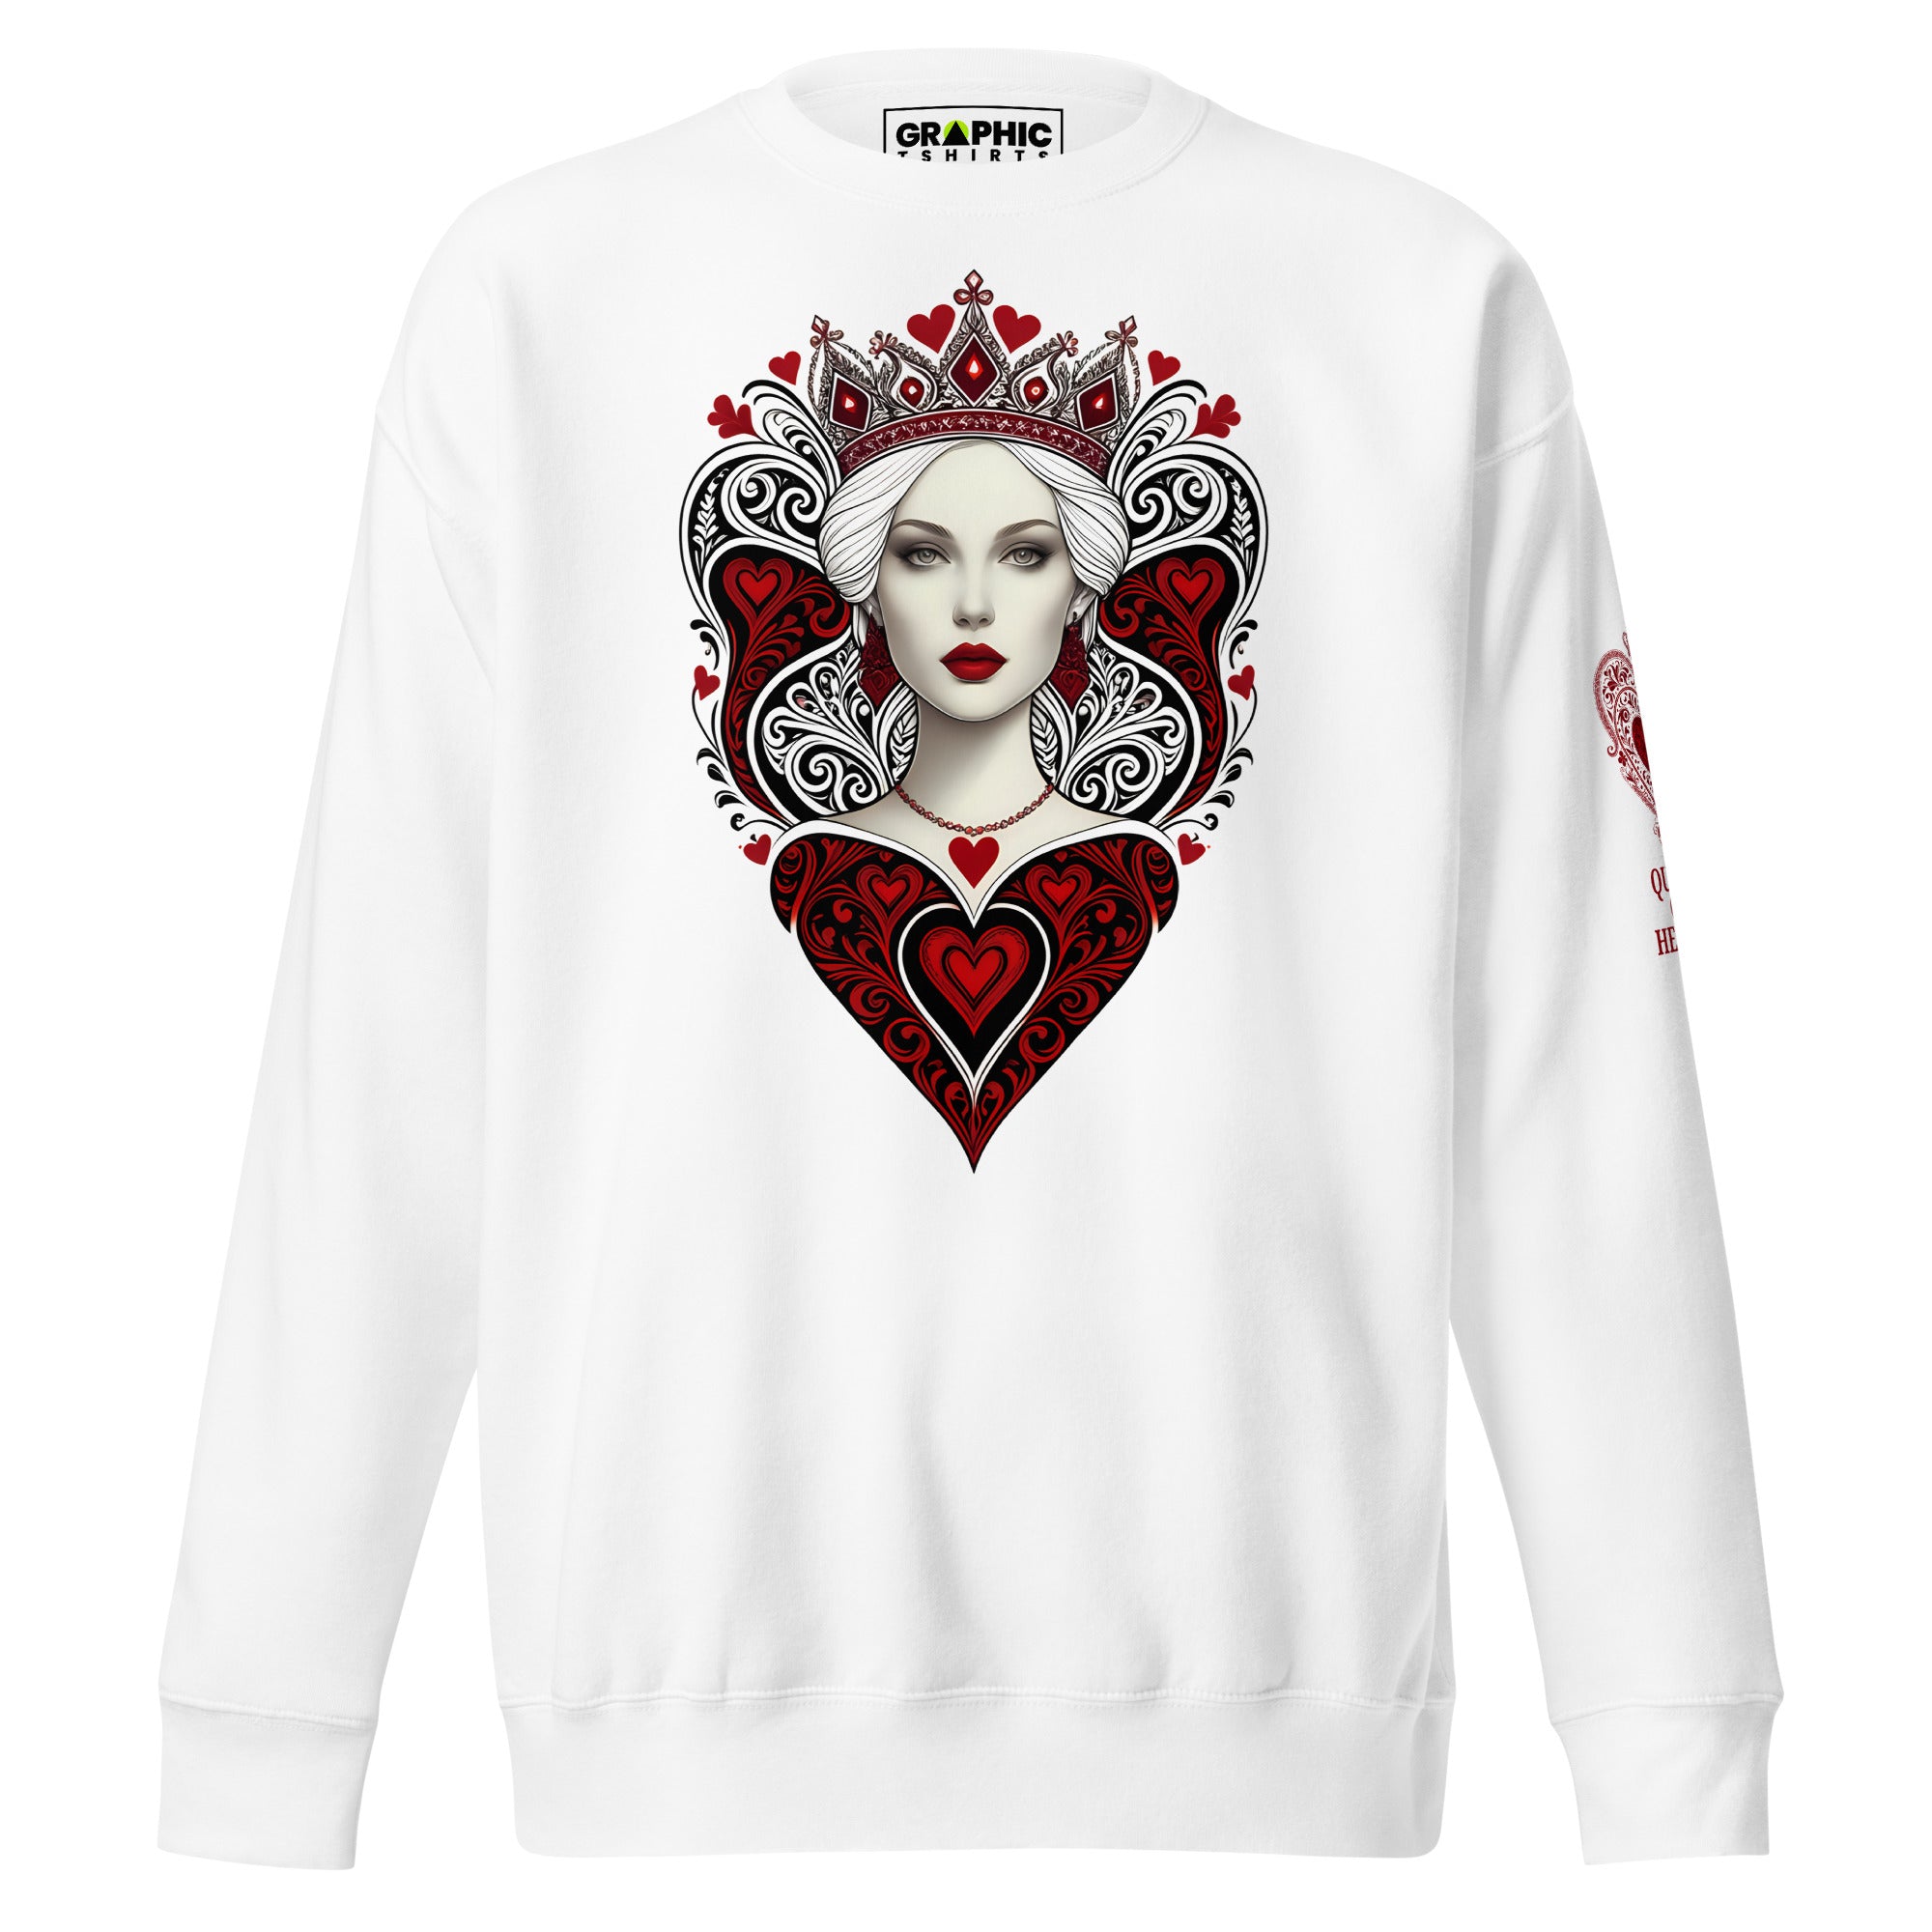 Unisex Premium Sweatshirt - Queen Of Hearts Series v.7